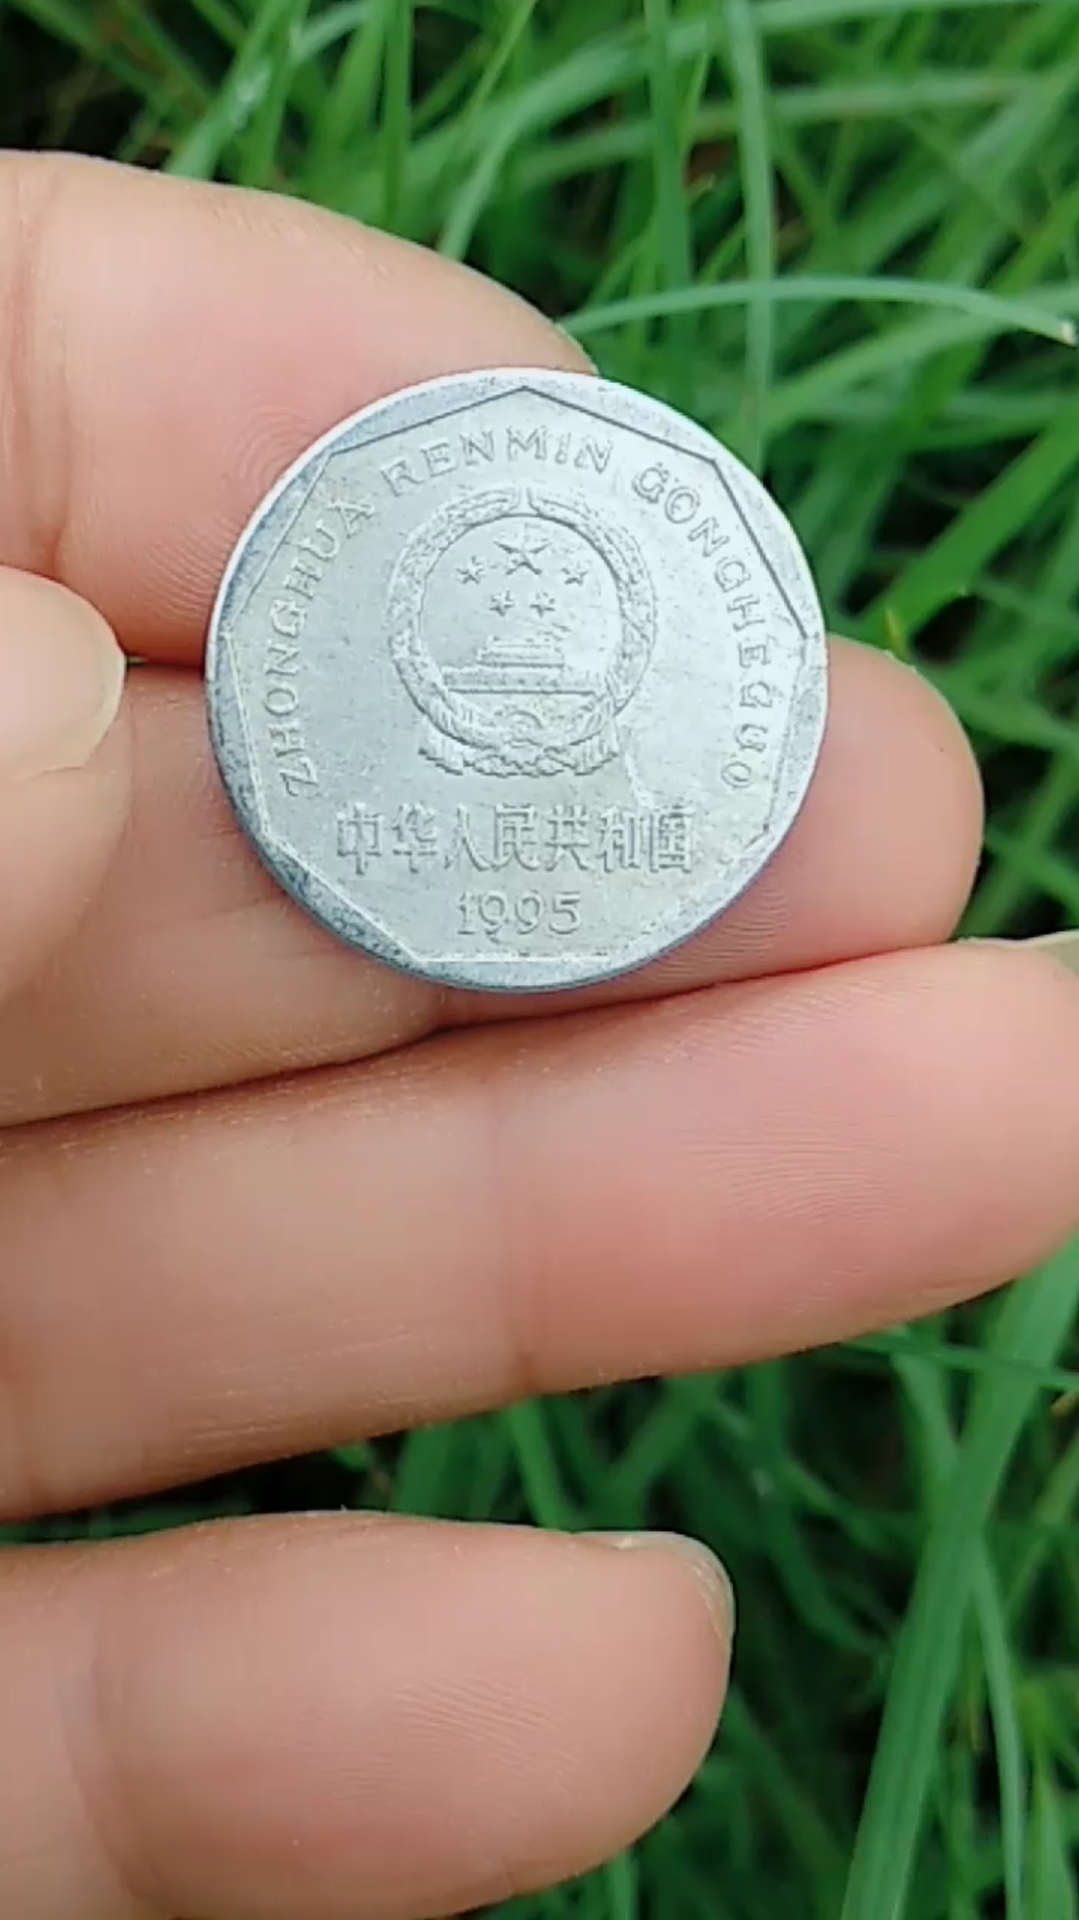 1995版国徽牡丹1角铝制菊花印边硬币,老铁们觉得其收藏价值如何?